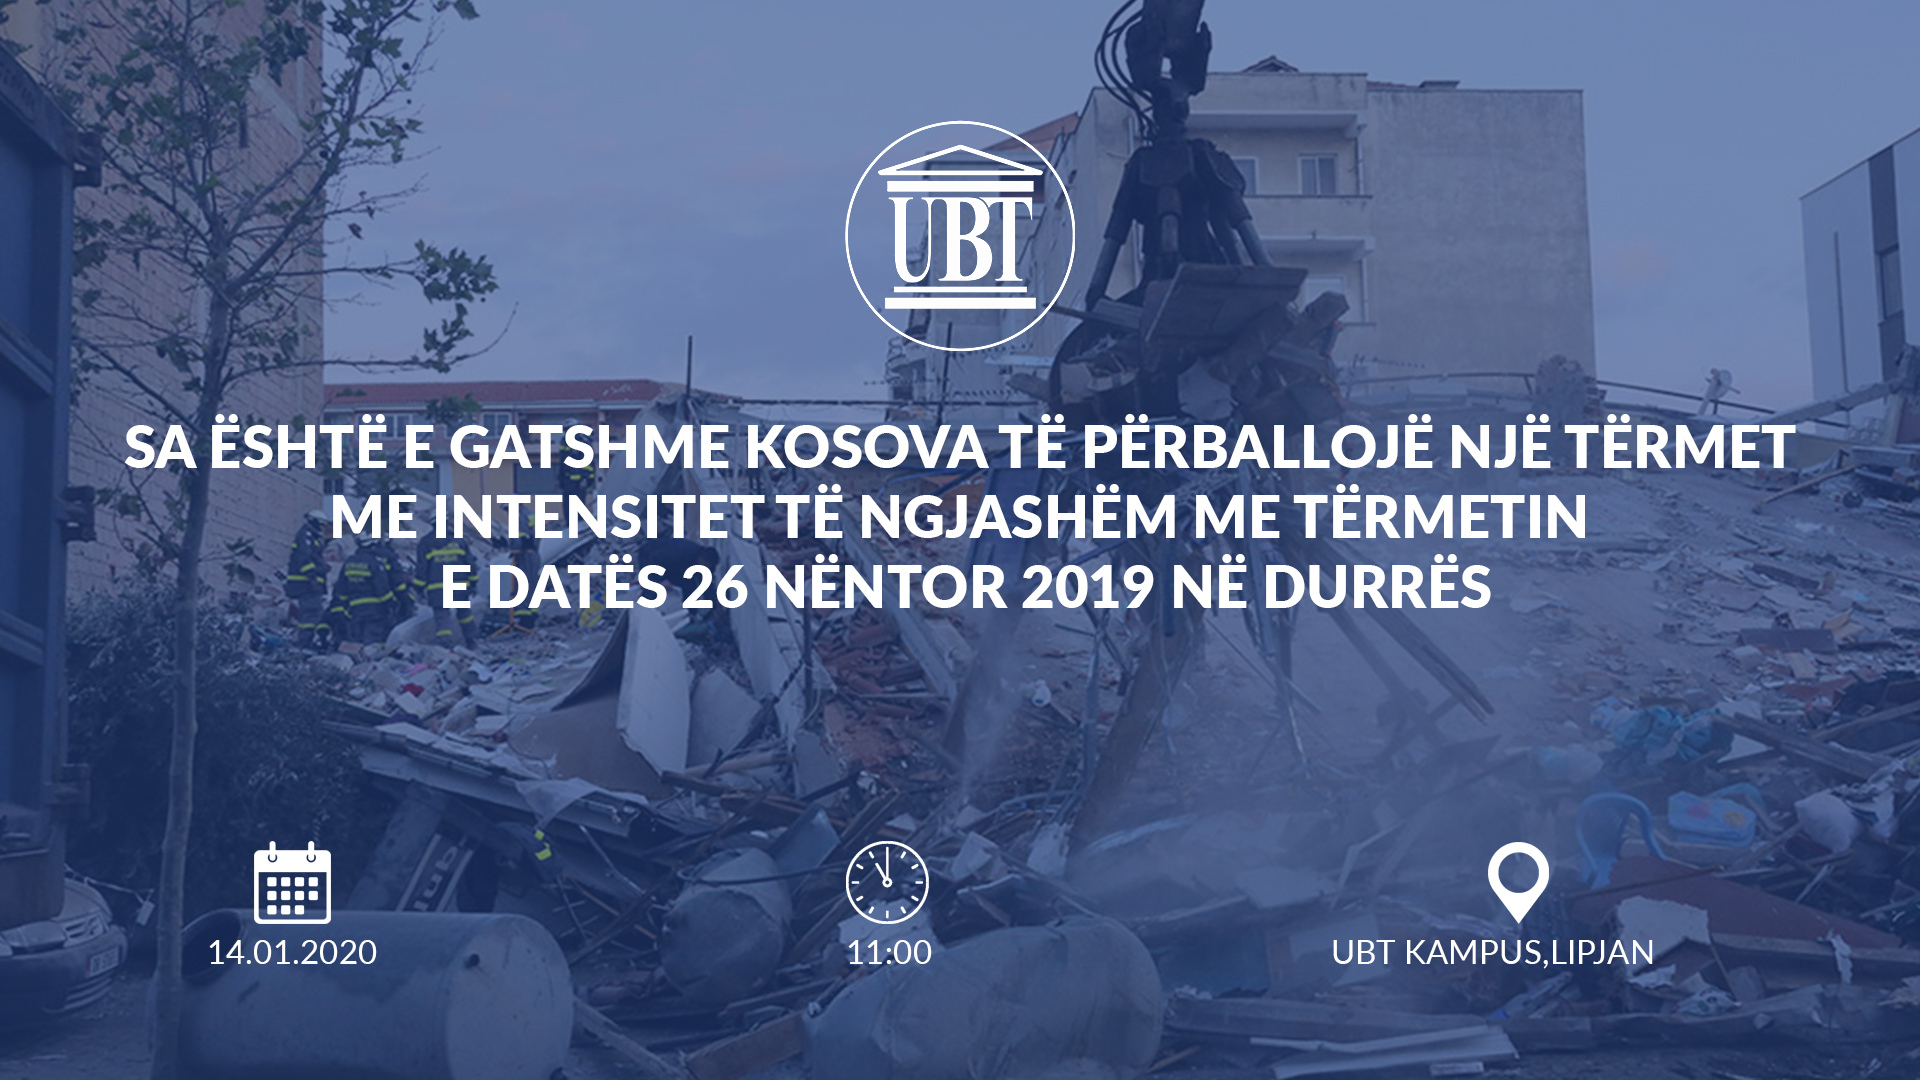 NJOFTIM: Në UBT do të mbahet konferenca me temë: “Sa është e gatshme Kosova të përballojë një tërmet me intensitet të ngjashëm me tërmetin e datës 26 nëntor 2019 në Durrës”